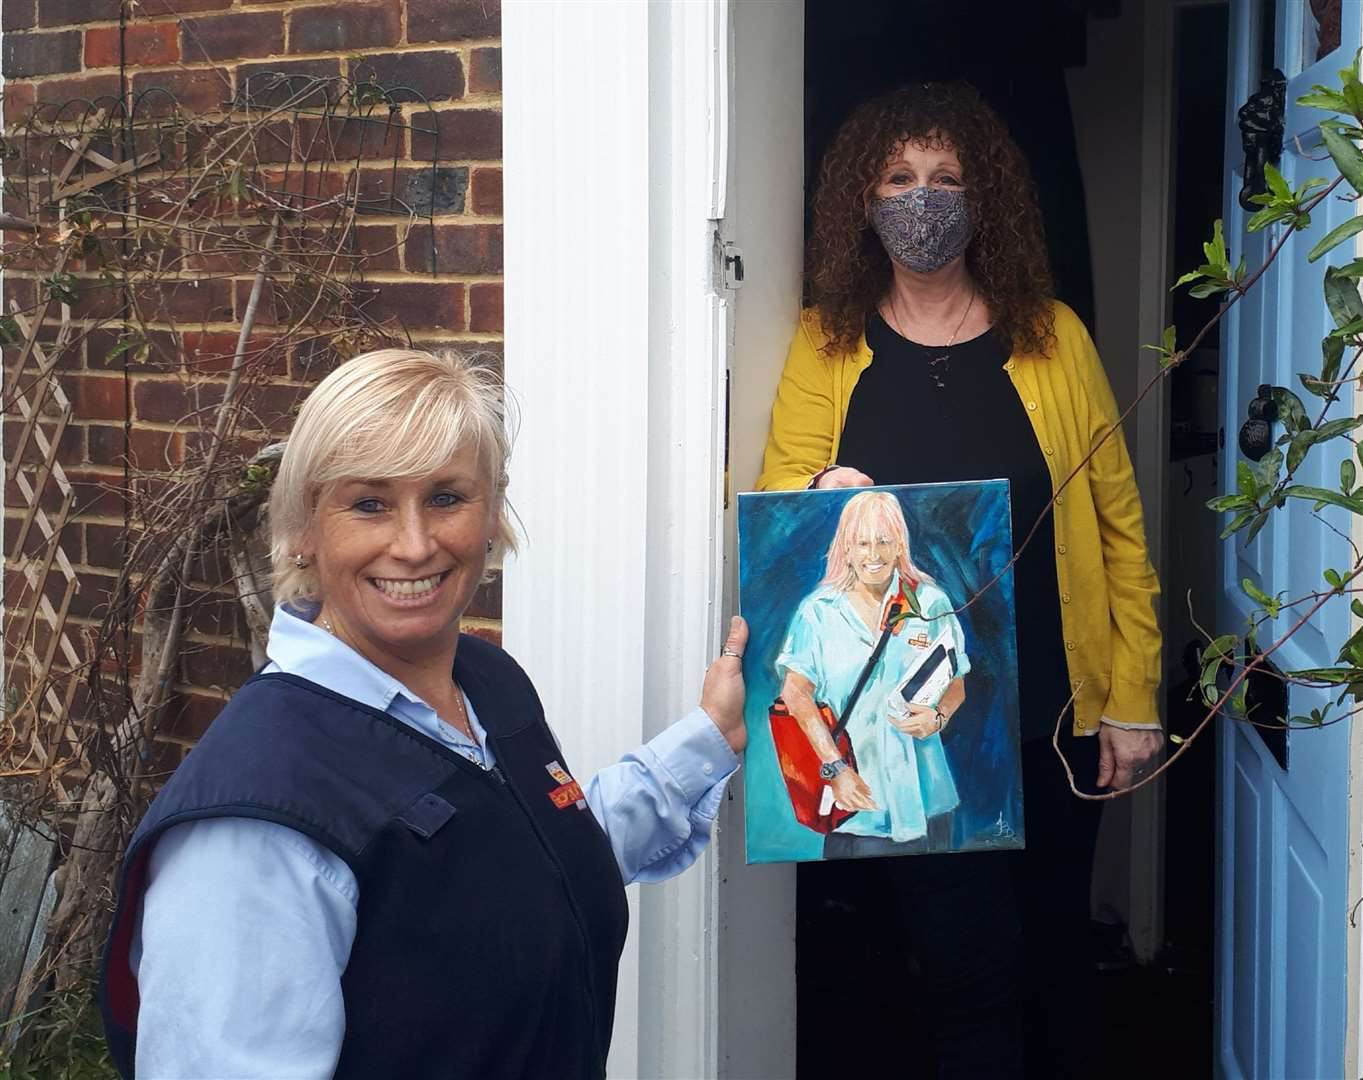 Postie Nicky Maisey reçoit un portrait de remerciement de la cliente et artiste reconnaissante Julie Bradshaw-Drury